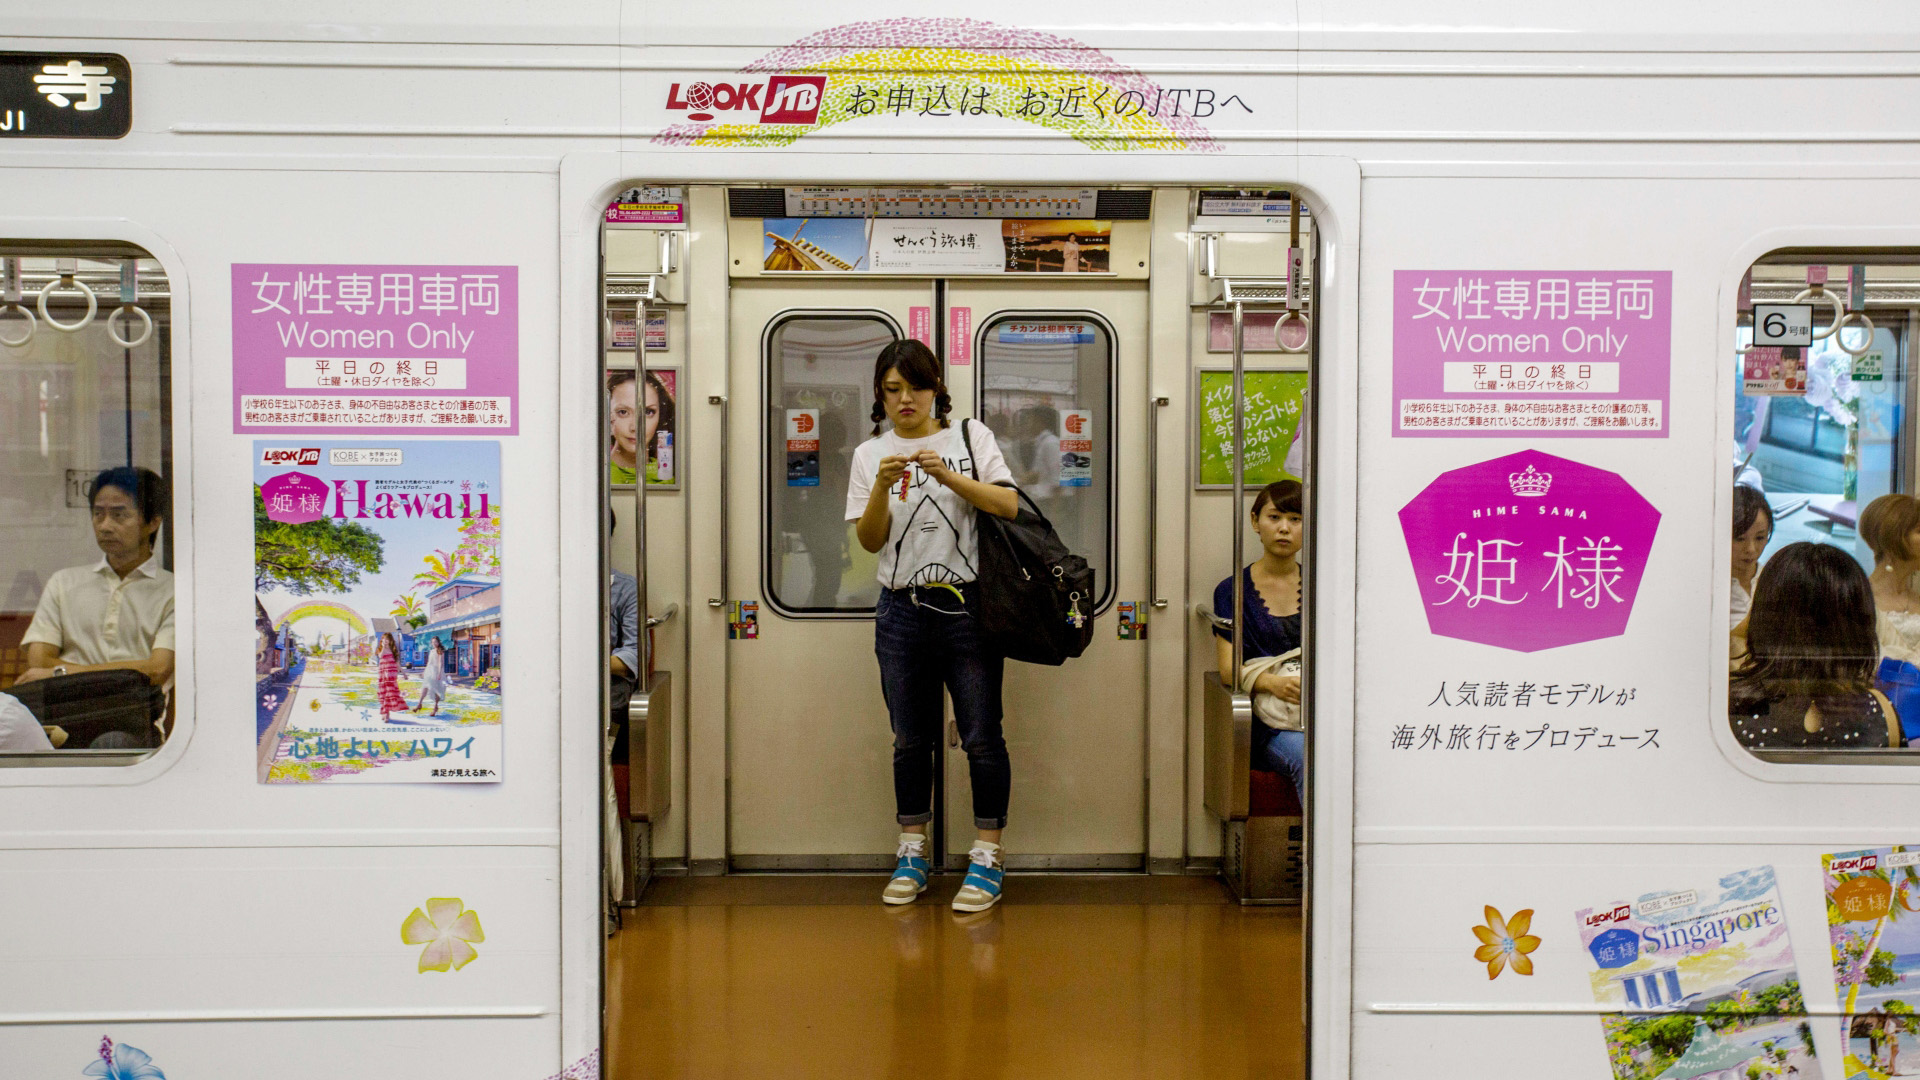 Csak nőknek fenntartott vonatkocsik Japánban